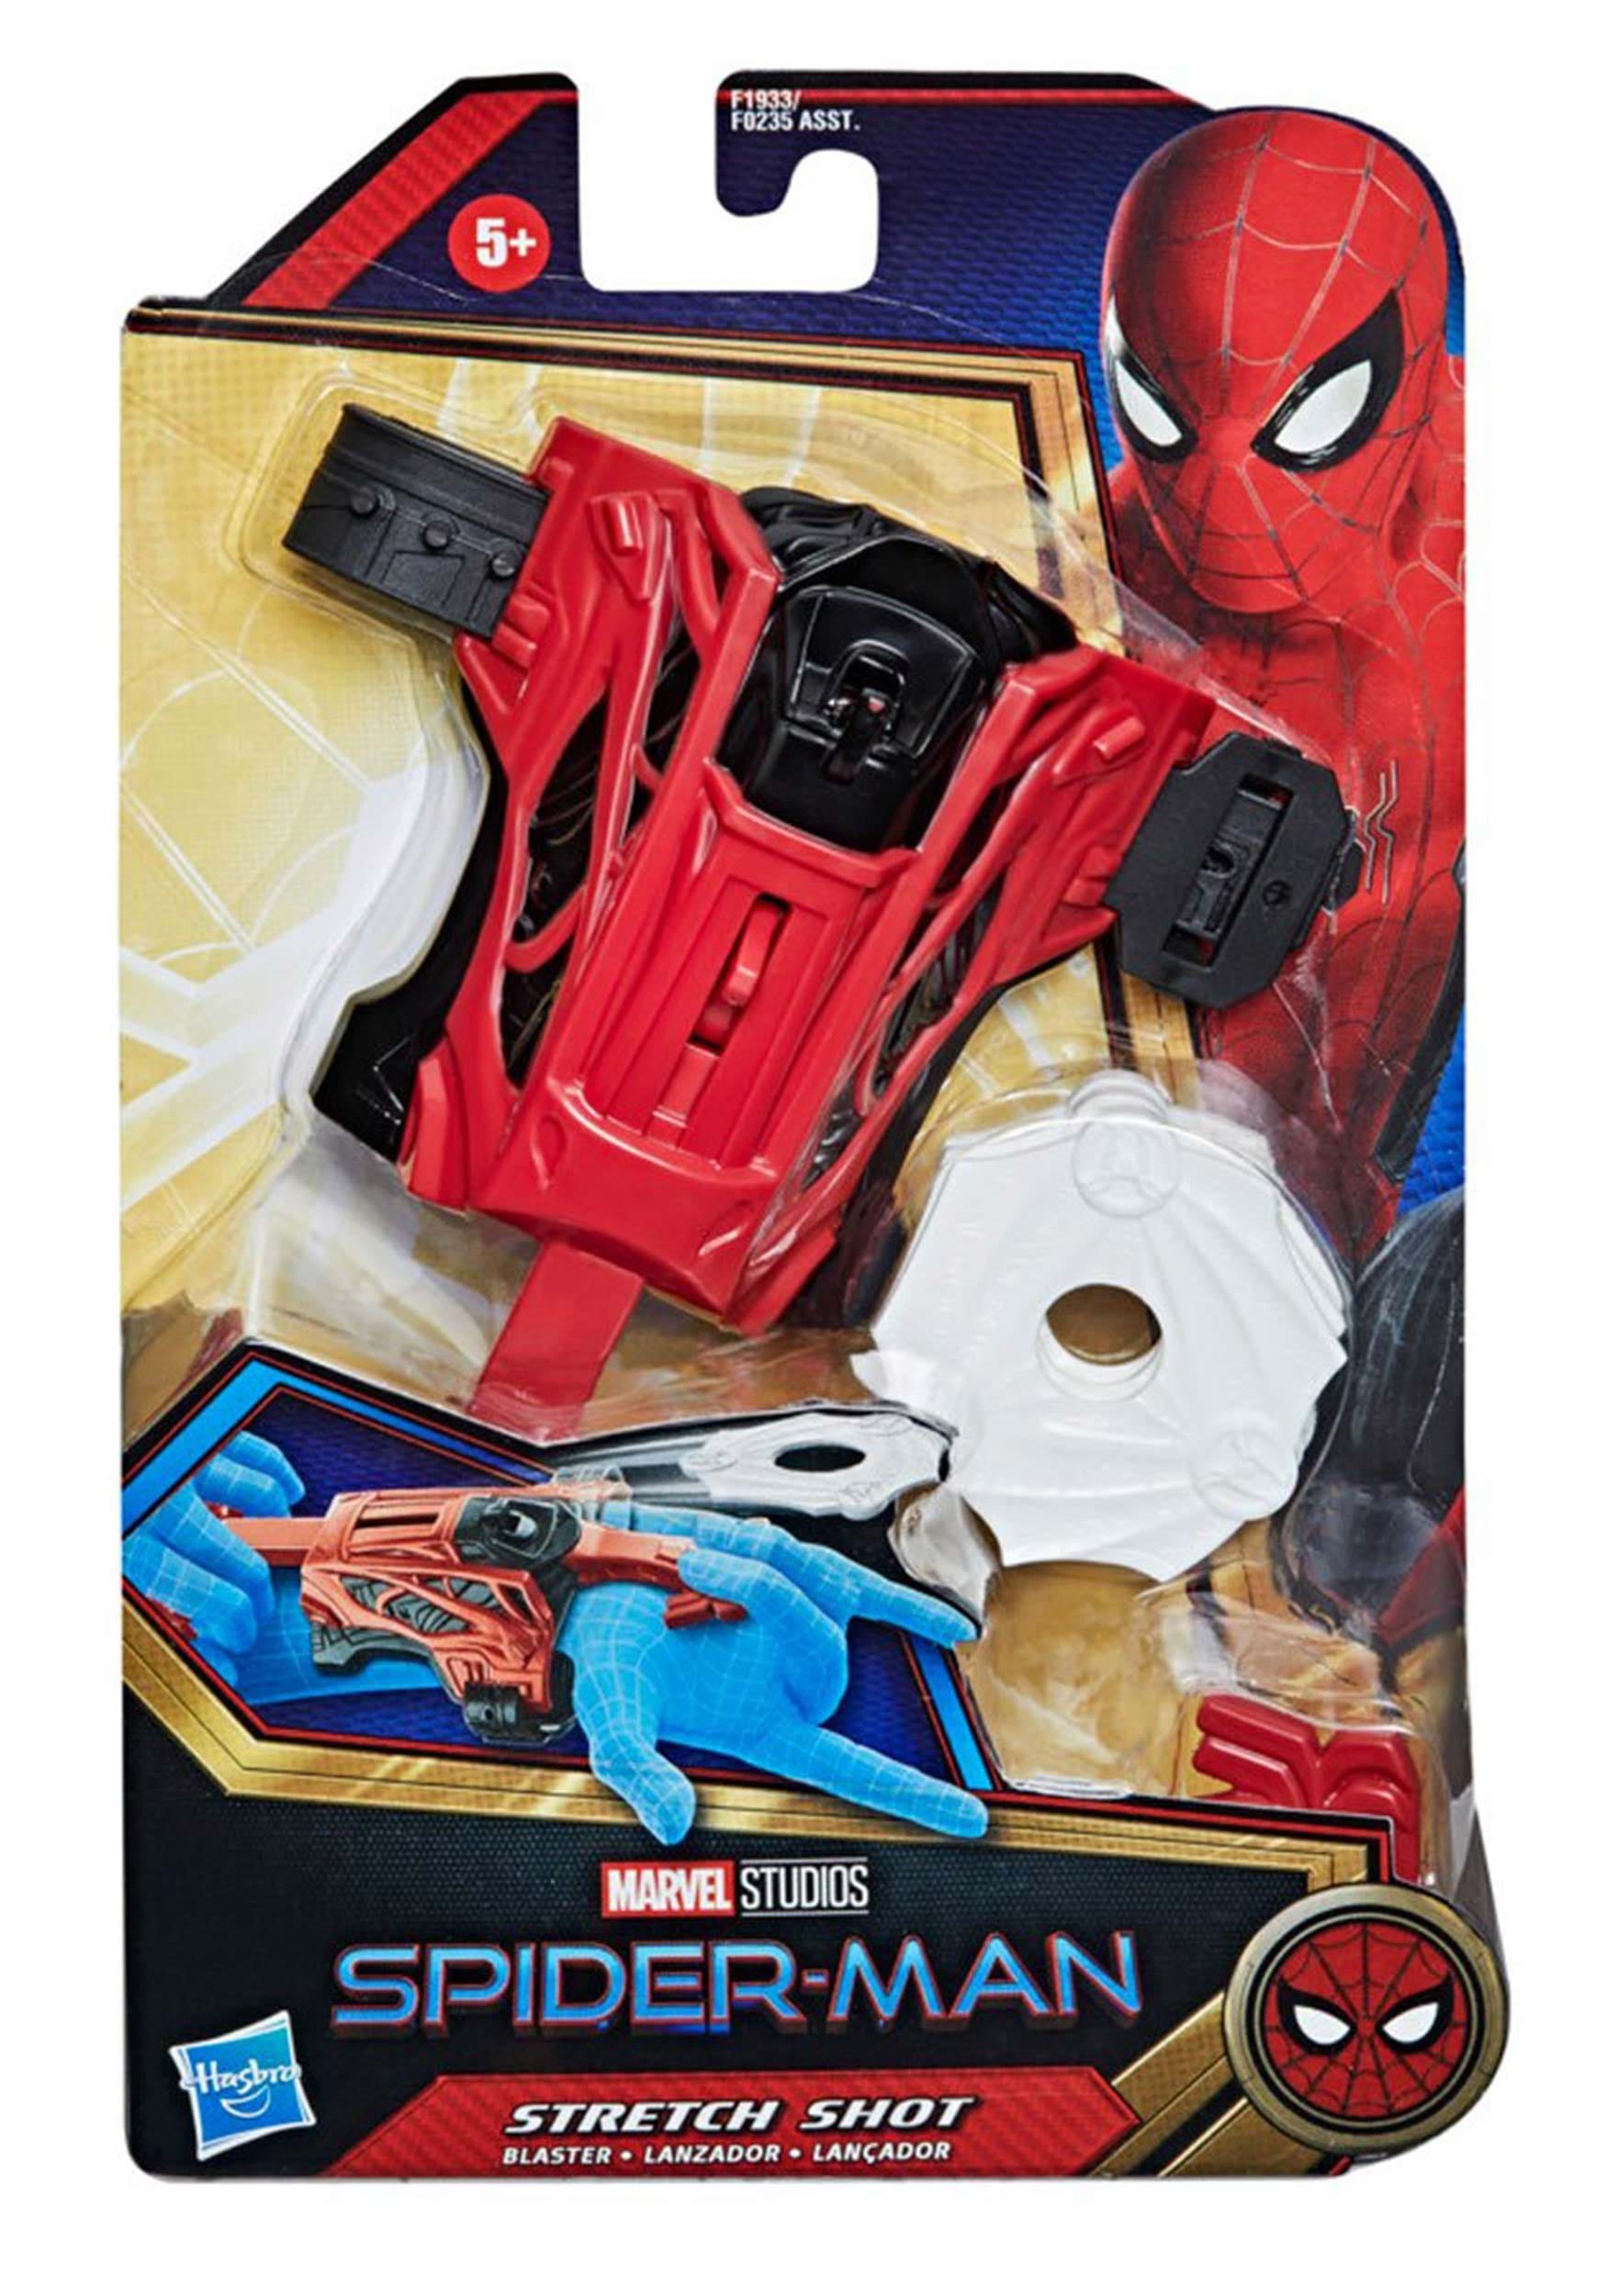 No Way Home Spider-Man's Stretch Shot Blaster